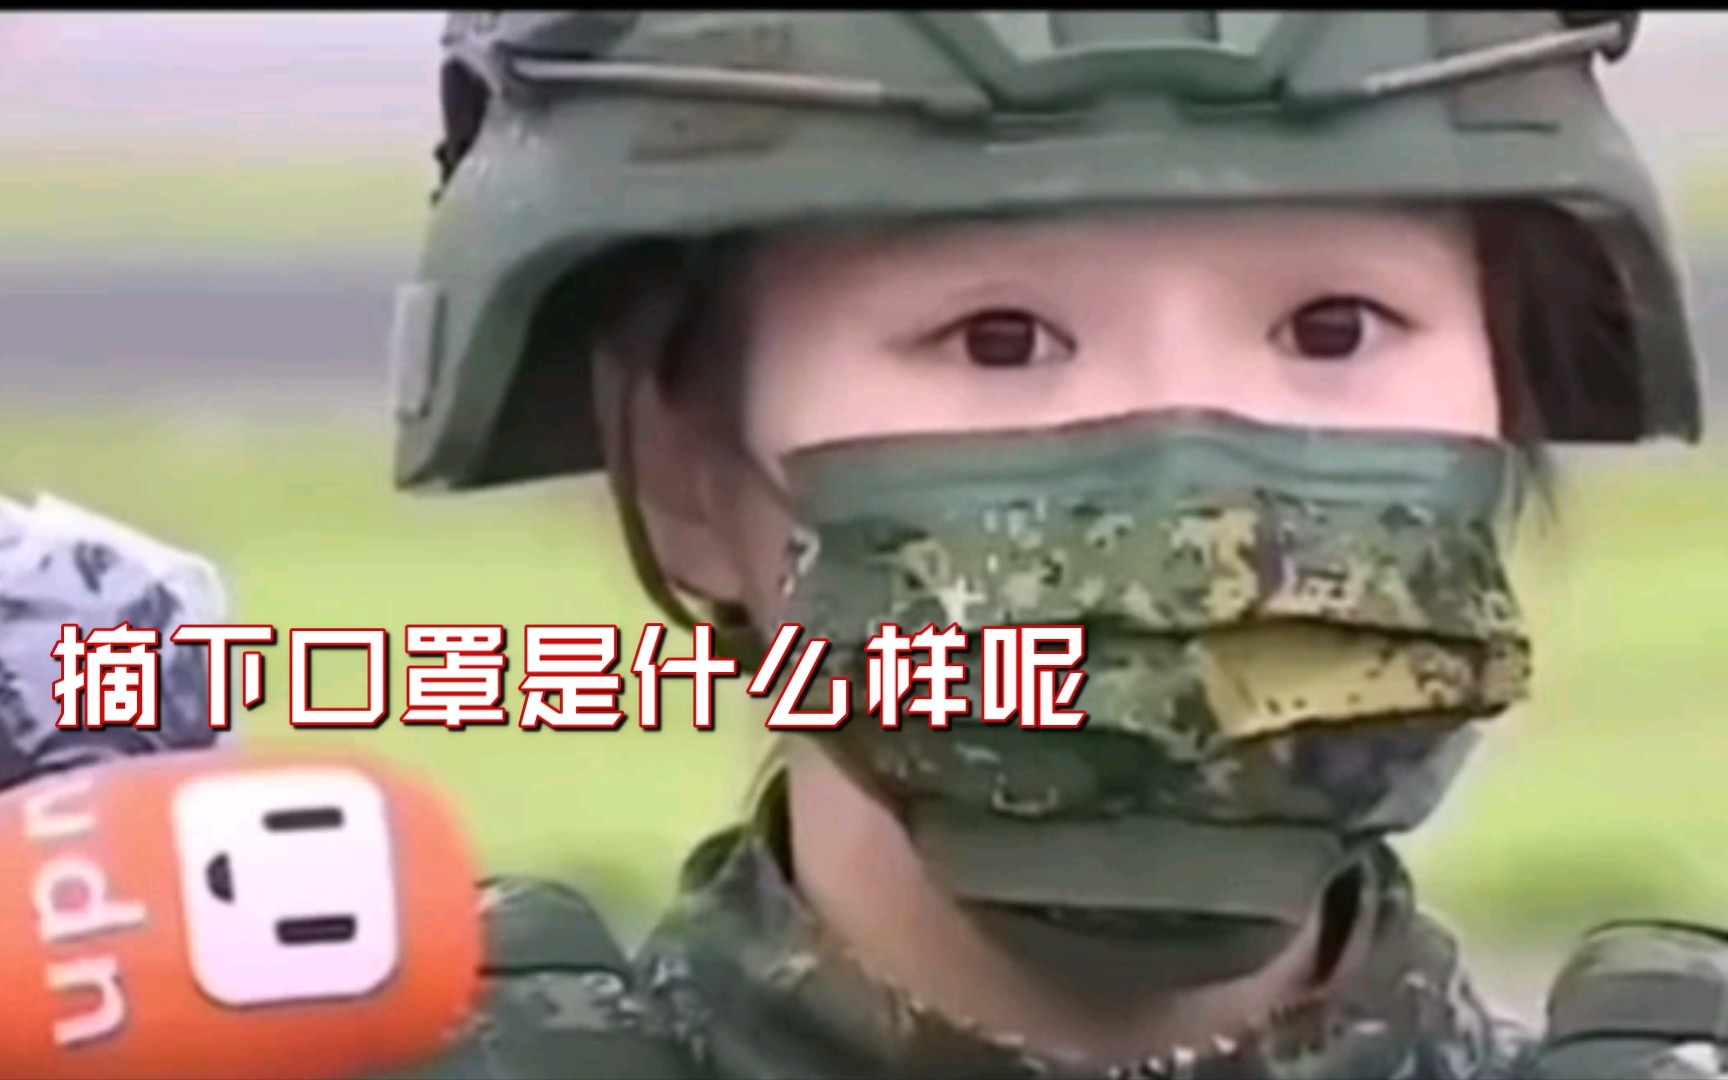 还记得这个嗲嗲的台湾女兵吗？网传摘了口罩长这样